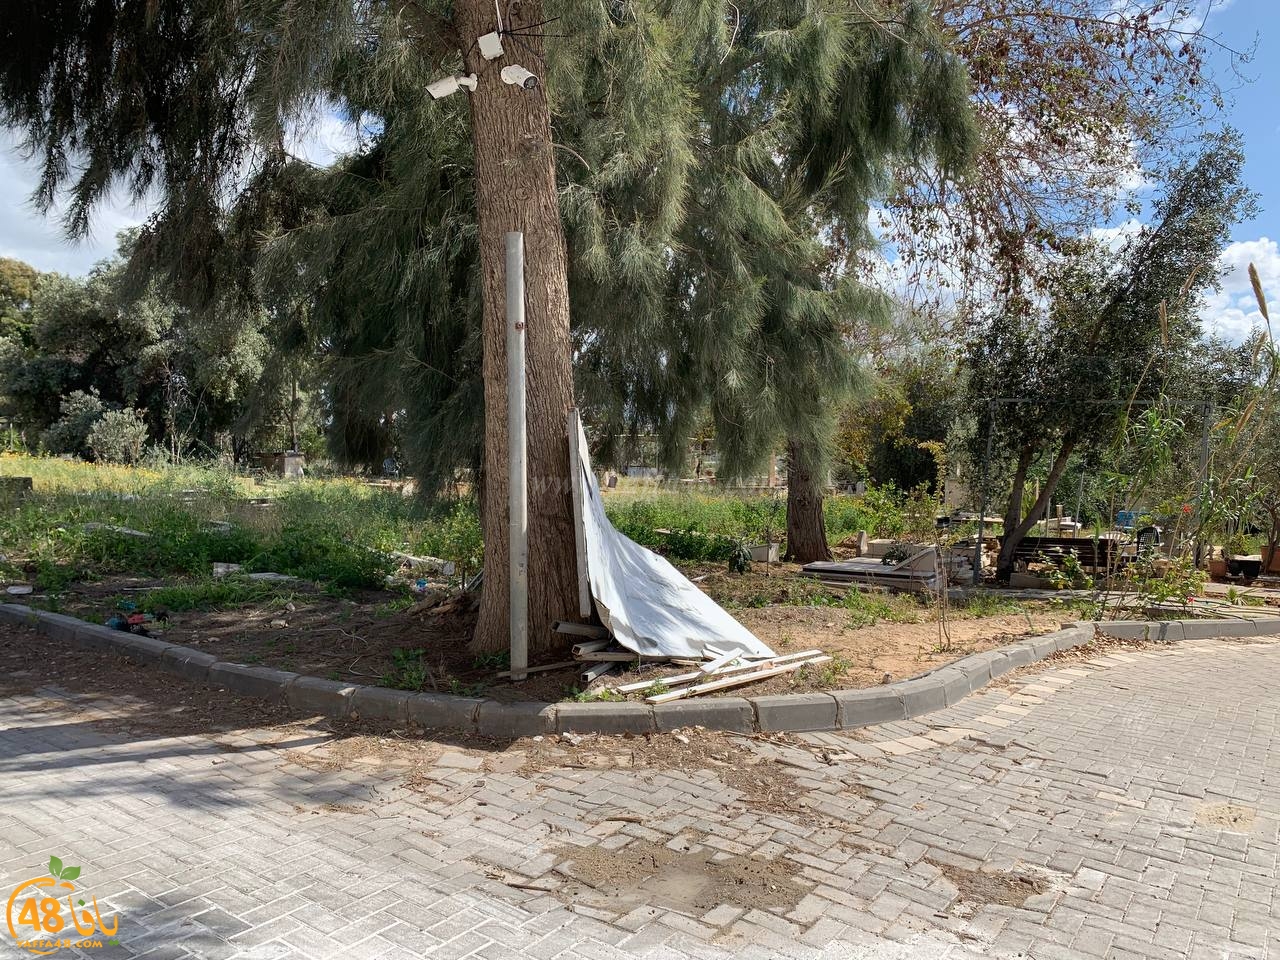 يافا: مقبرة طاسو يعتليها الاهمال ودعوات لتنظيفها وصيانتها 